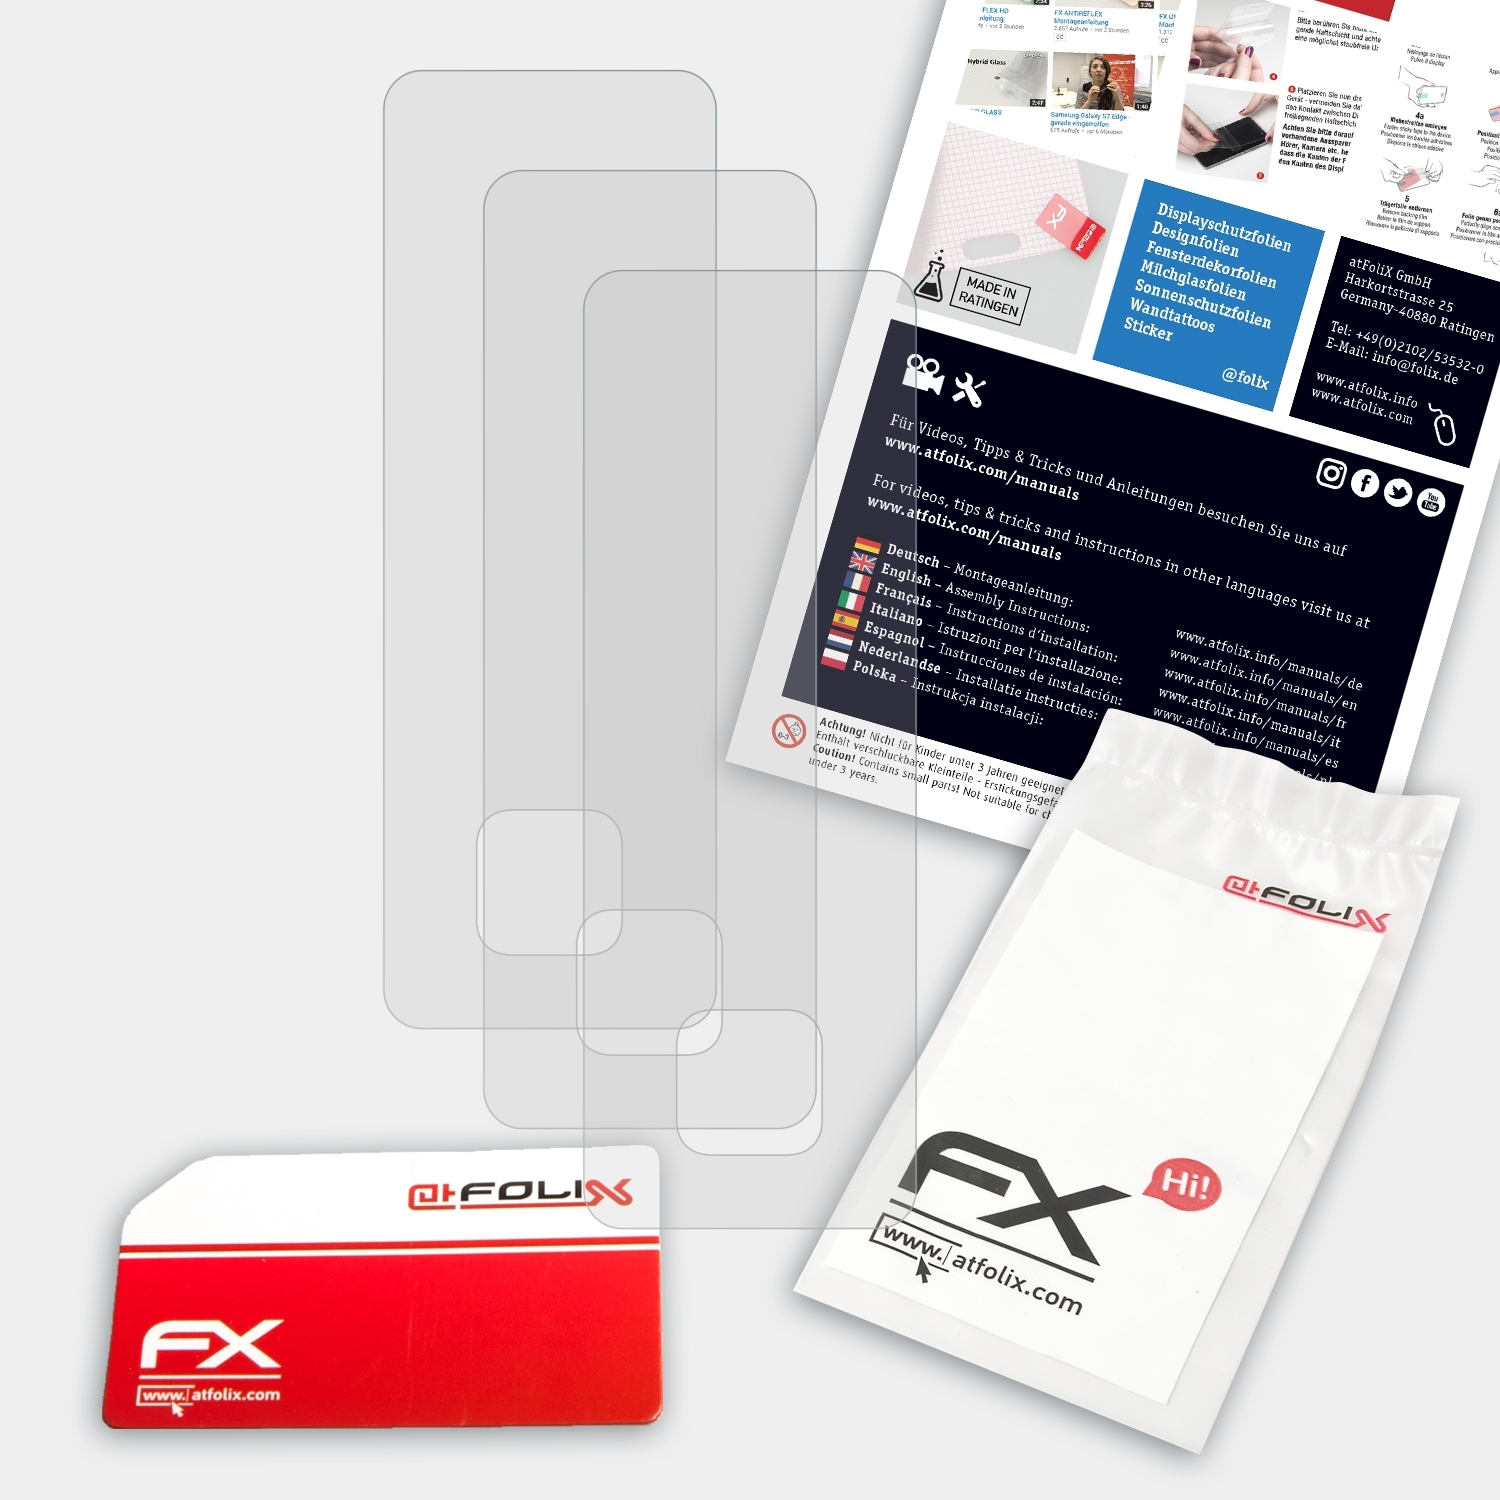 ATFOLIX 3x Transcend MP350) FX-Antireflex Displayschutz(für